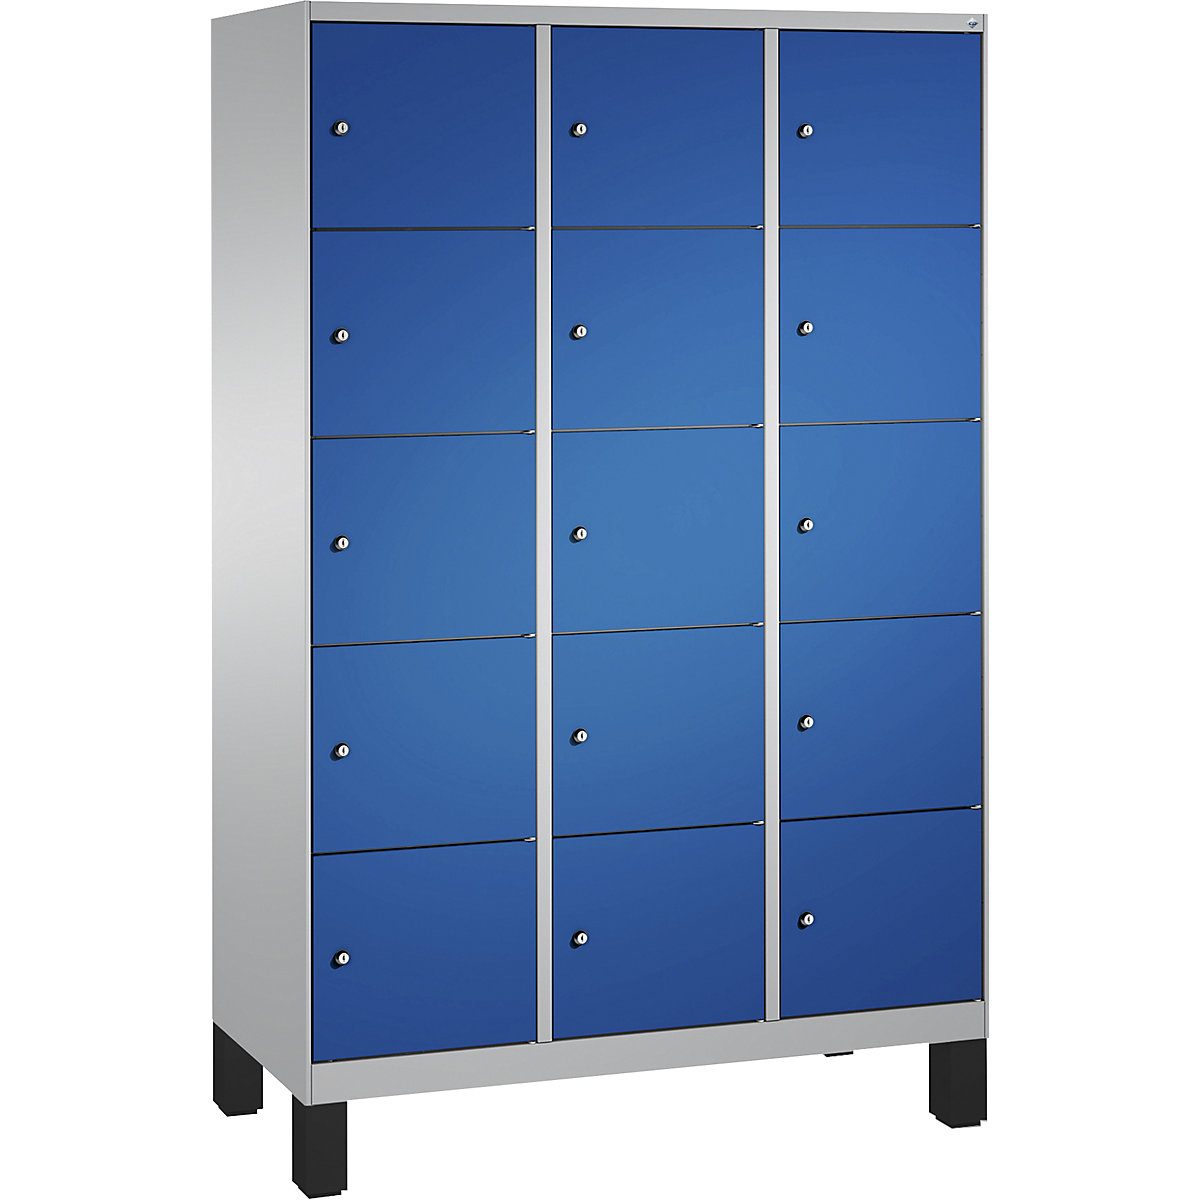 Armoire à casiers sur pieds EVOLO – C+P, 3 compartiments, 5 casiers chacun, largeur compartiments 400 mm, aluminium / bleu gentiane-12